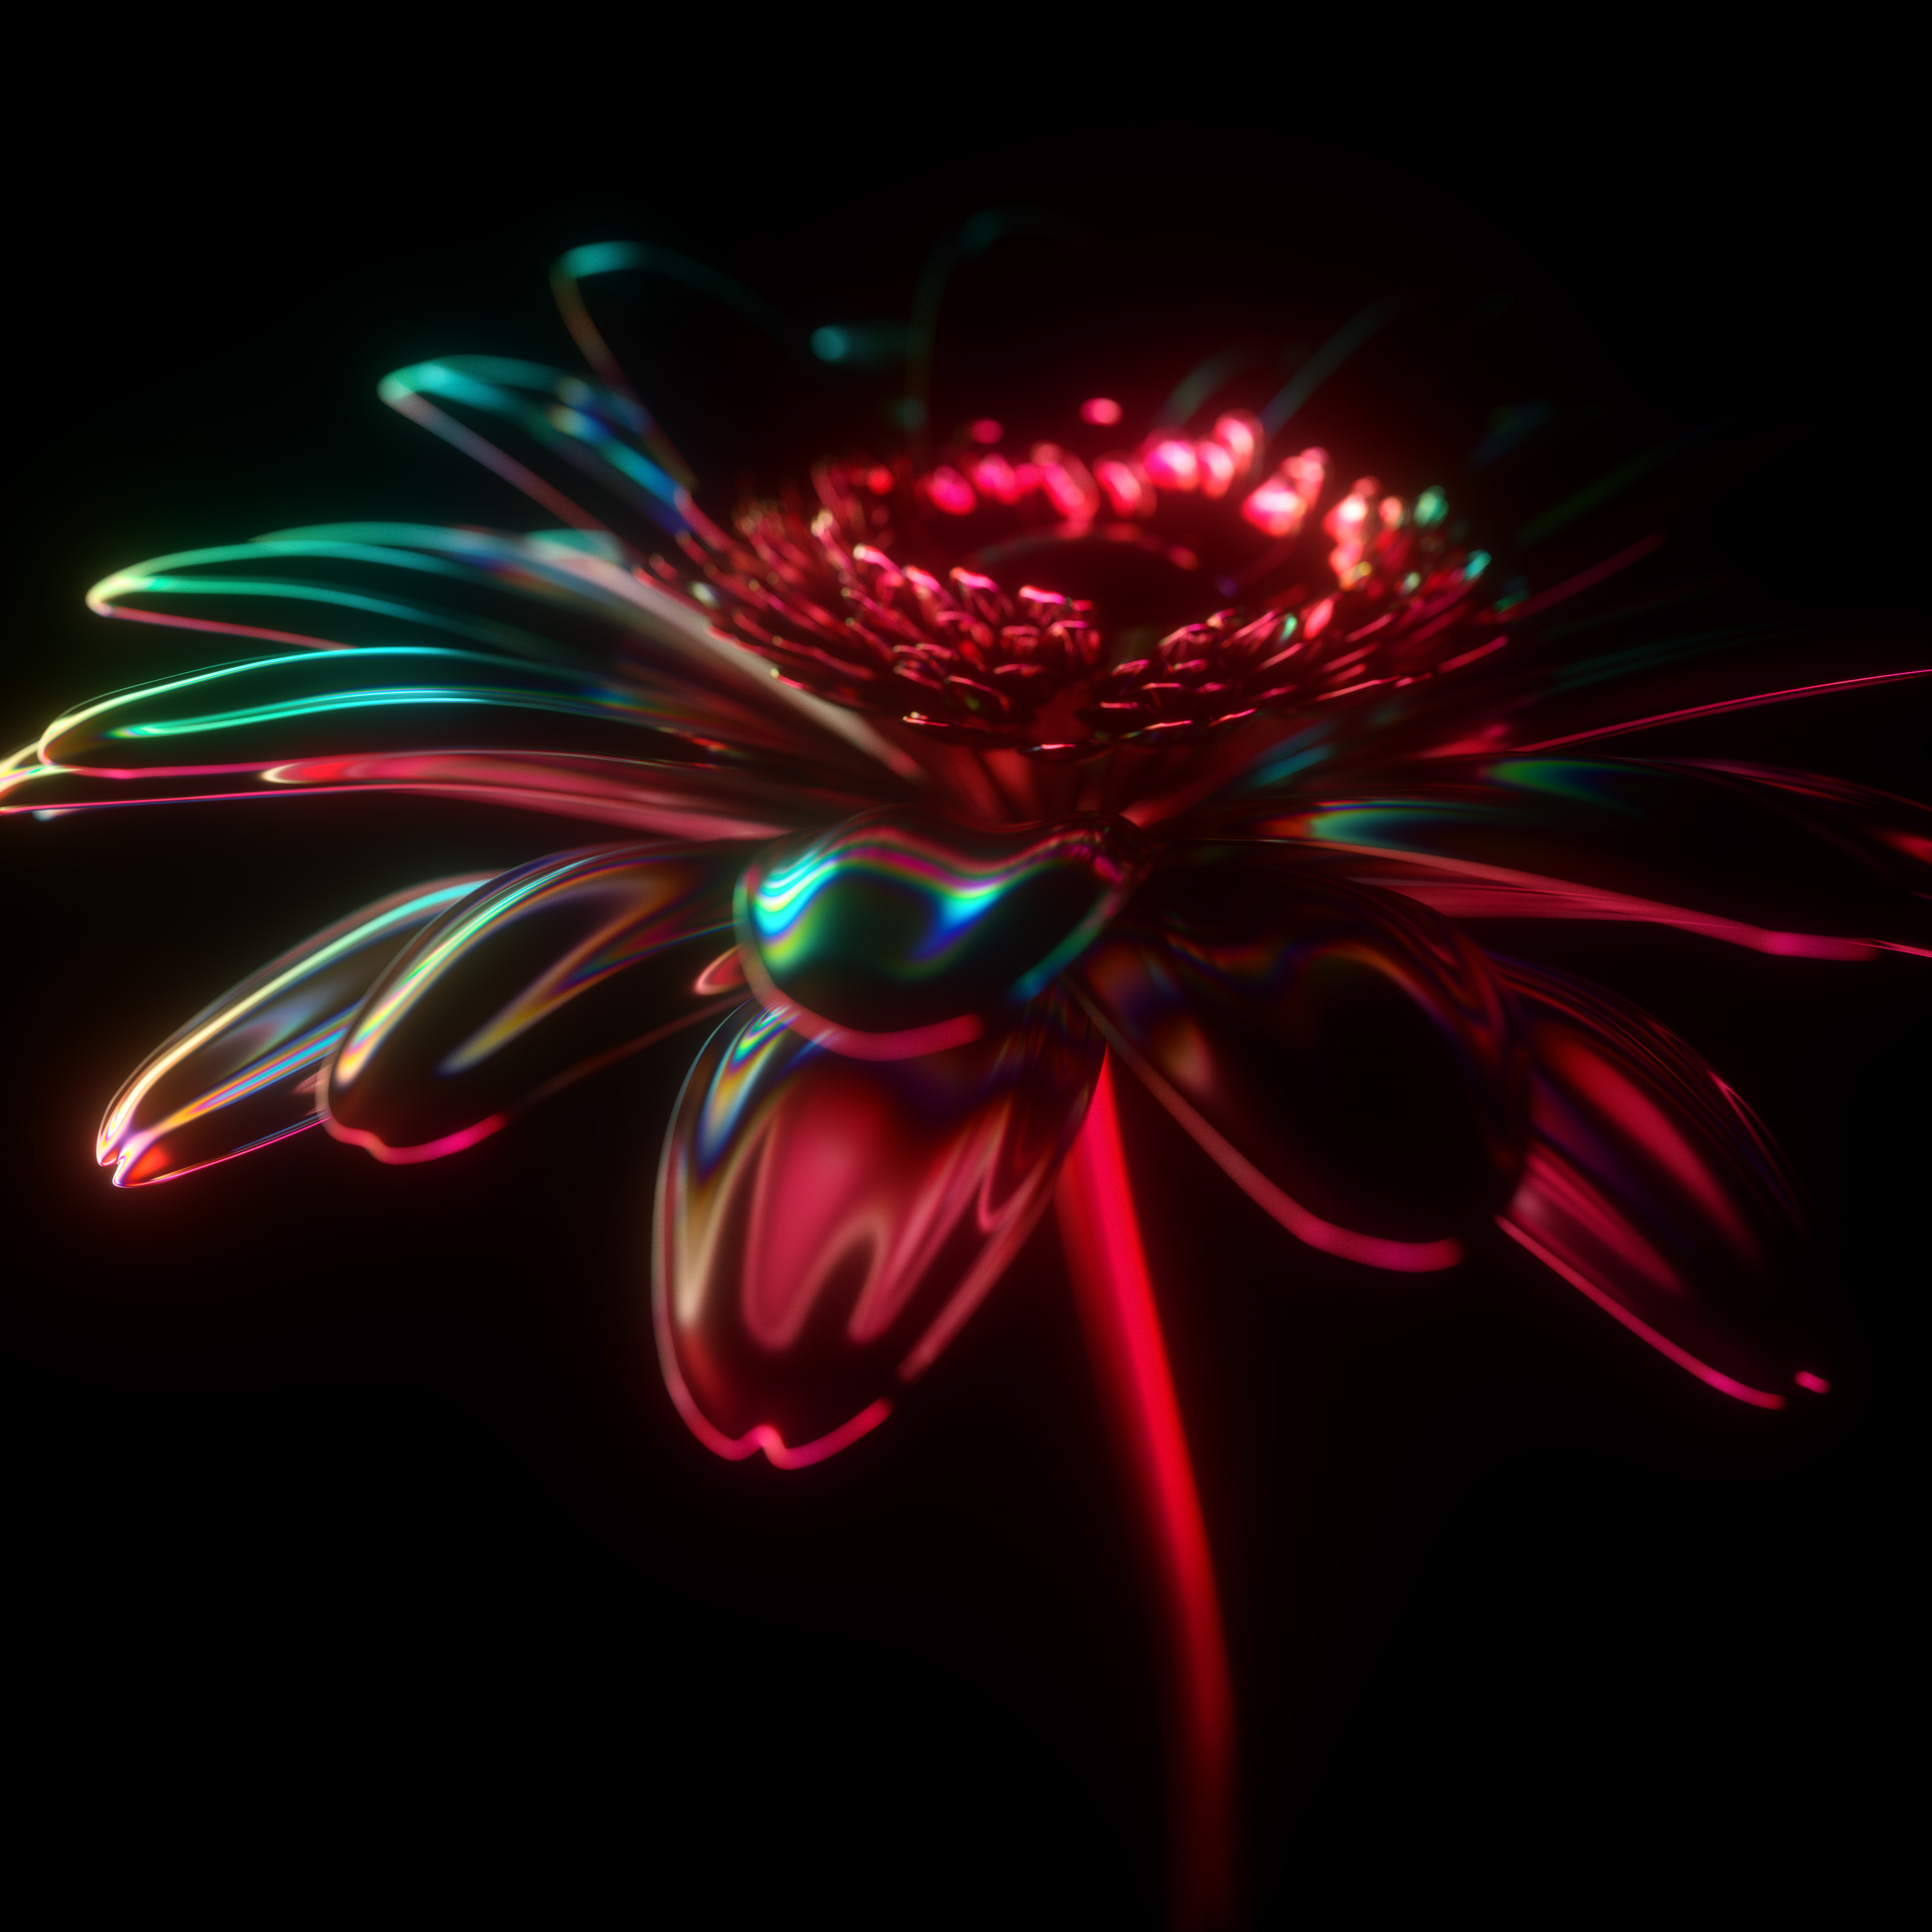 Hình nền hoa 3D tuyệt đẹp với độ phân giải cao, tạo nên cảm giác sống động và thật như chính giữa một vườn hoa rực rỡ. Xem hình để khám phá thêm về bộ sưu tập hình nền độc đáo này.